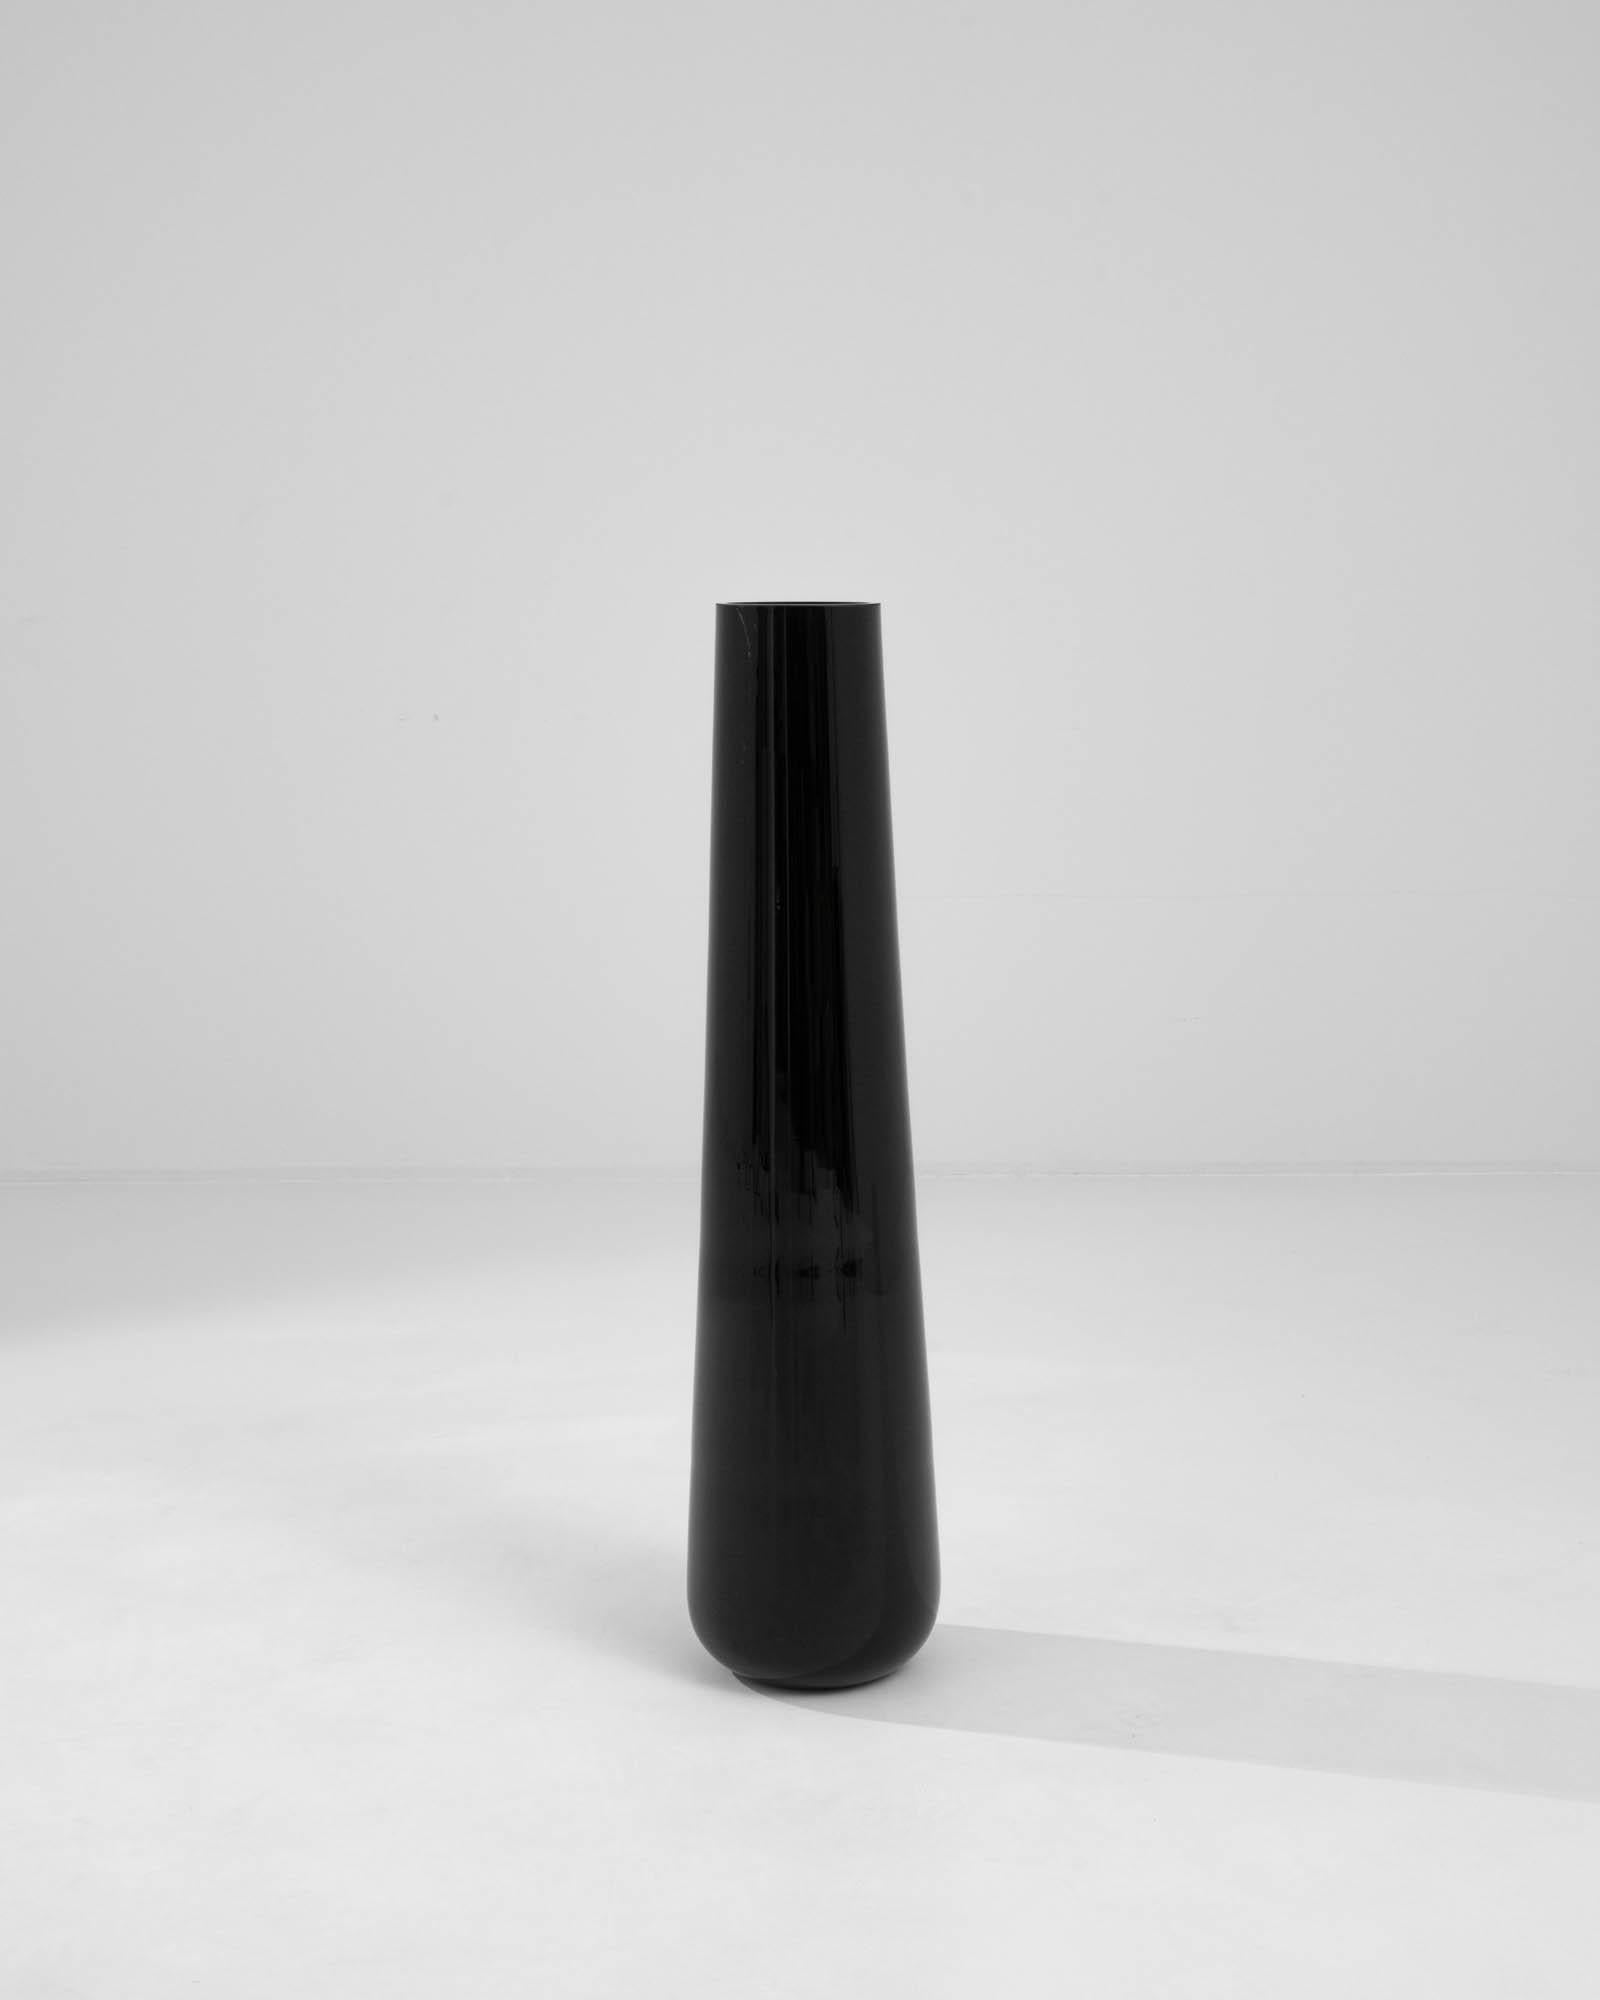 Ce vase en verre tchèque du XXe siècle est d'une sophistication discrète. Habillé d'une teinte noire épurée, le vase dégage un air d'élégance intemporelle. Sa forme allongée s'élève gracieusement, ajoutant une touche de raffinement à tout espace. La